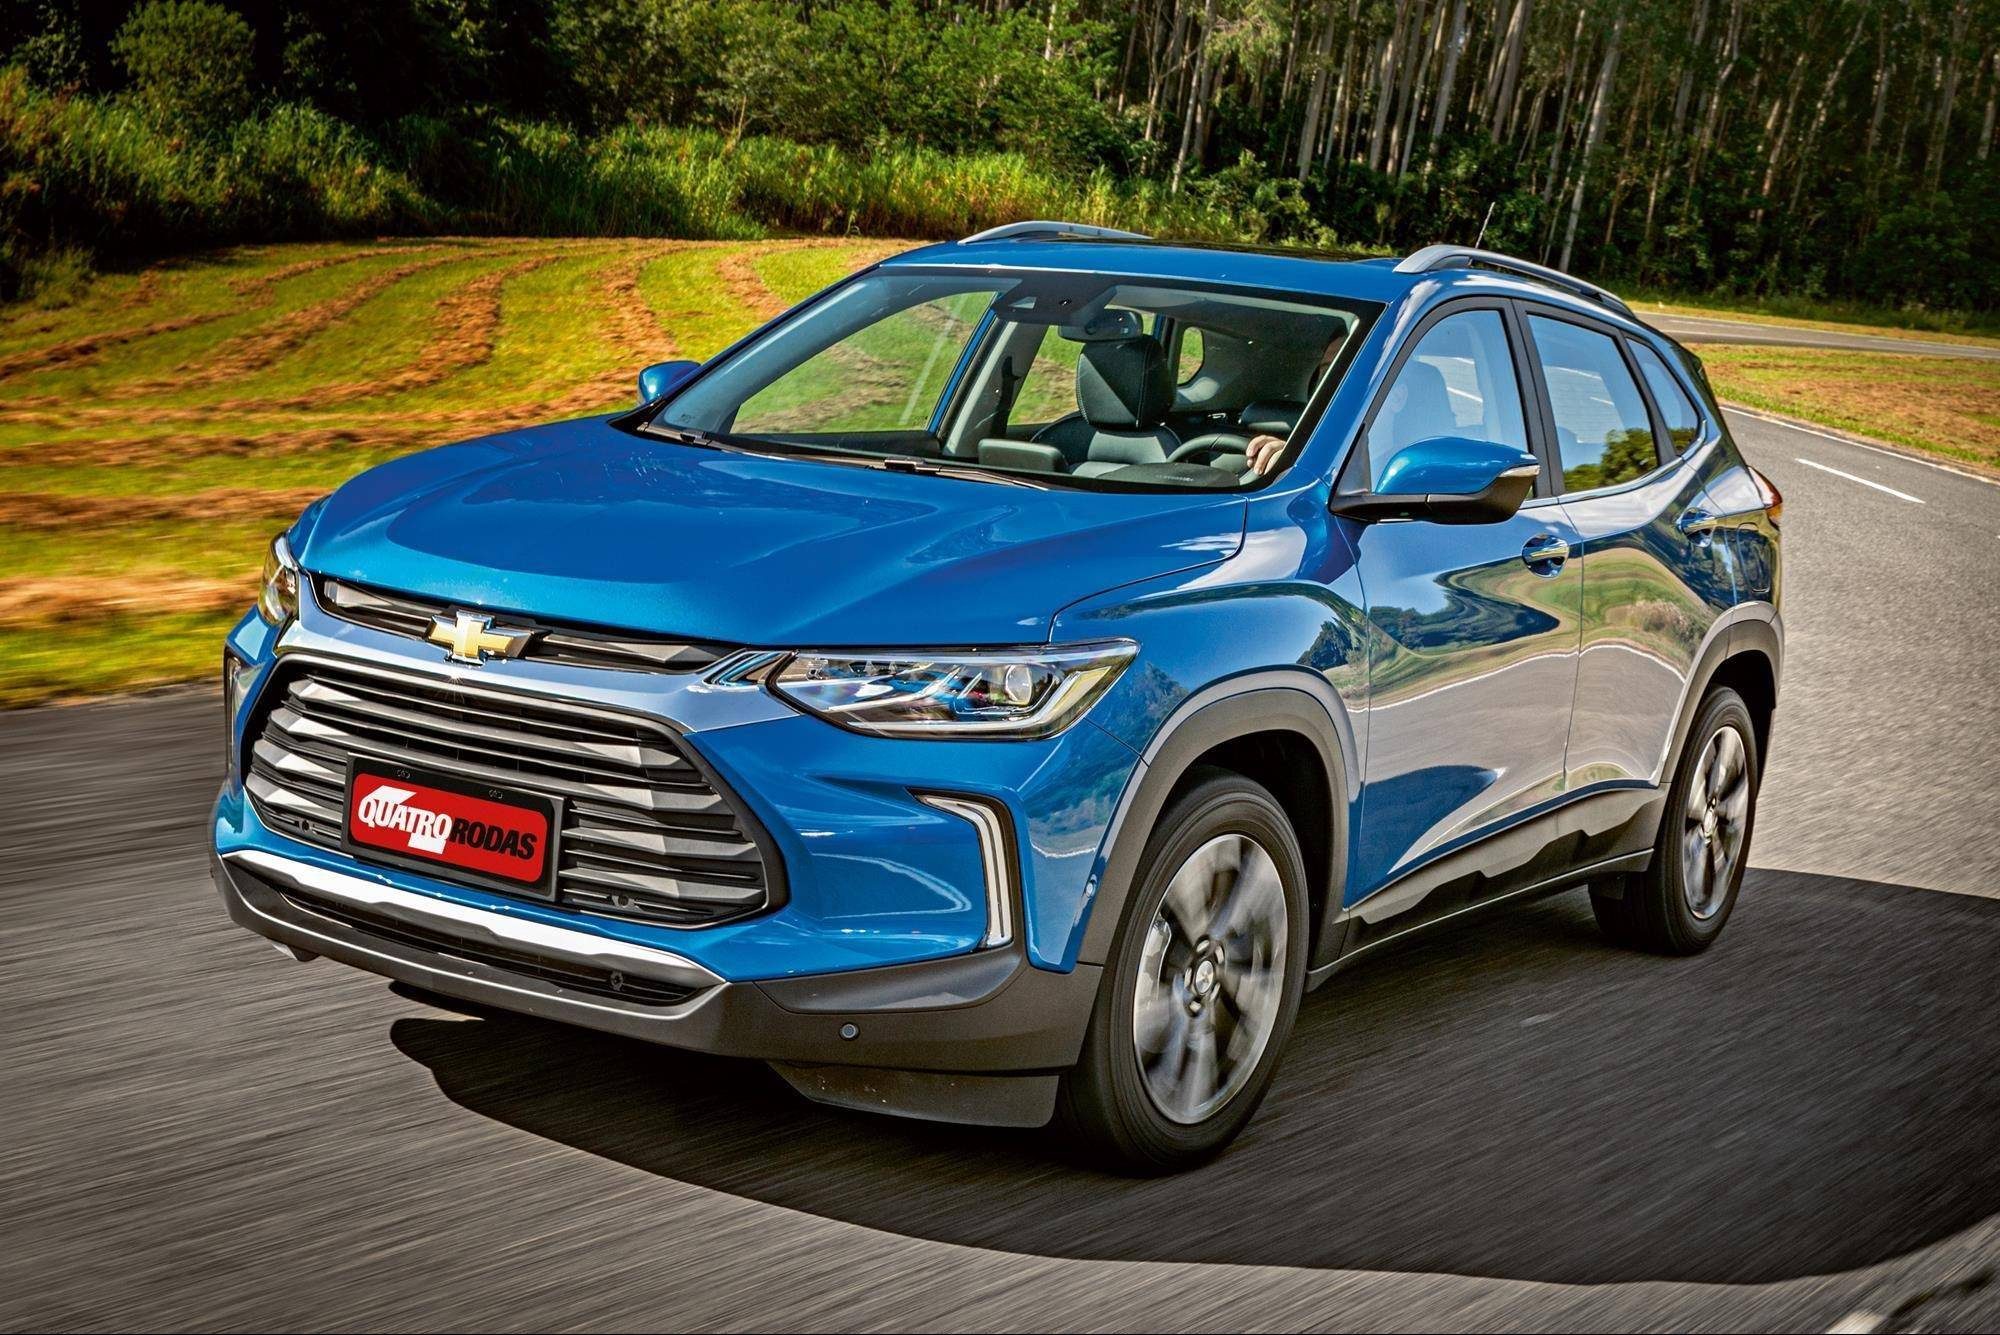 Teste novo Chevrolet Tracker 1.2 supera rivais em desempenho e consumo